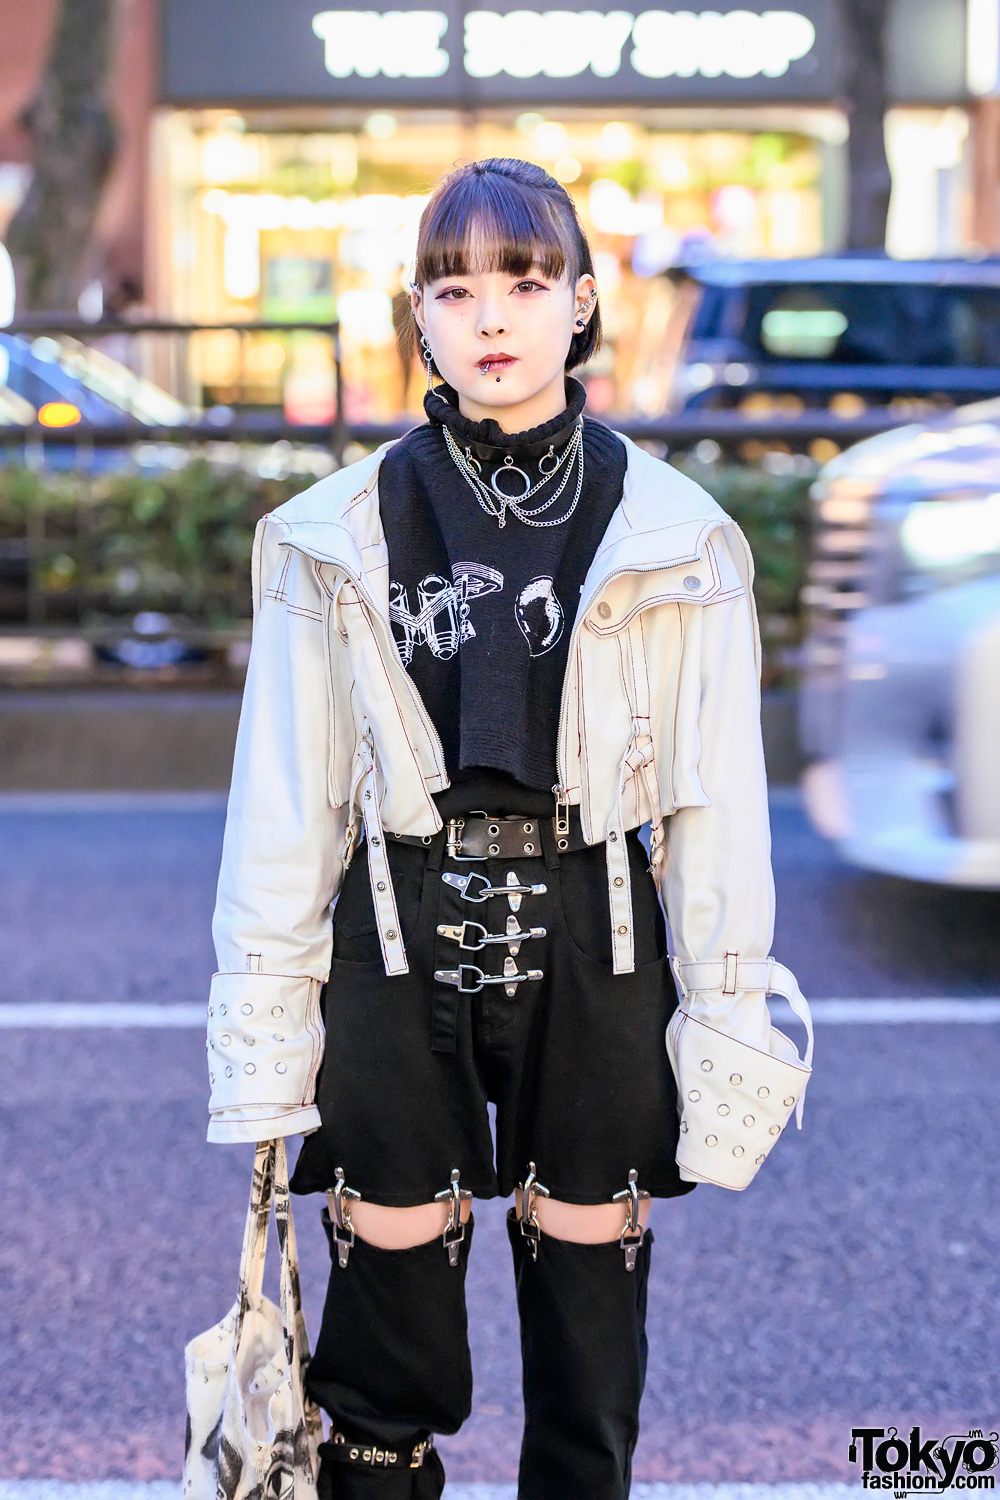 Harajuku Girl in MYOB NYC Fireman Joint Pants, Oversized Sleeve